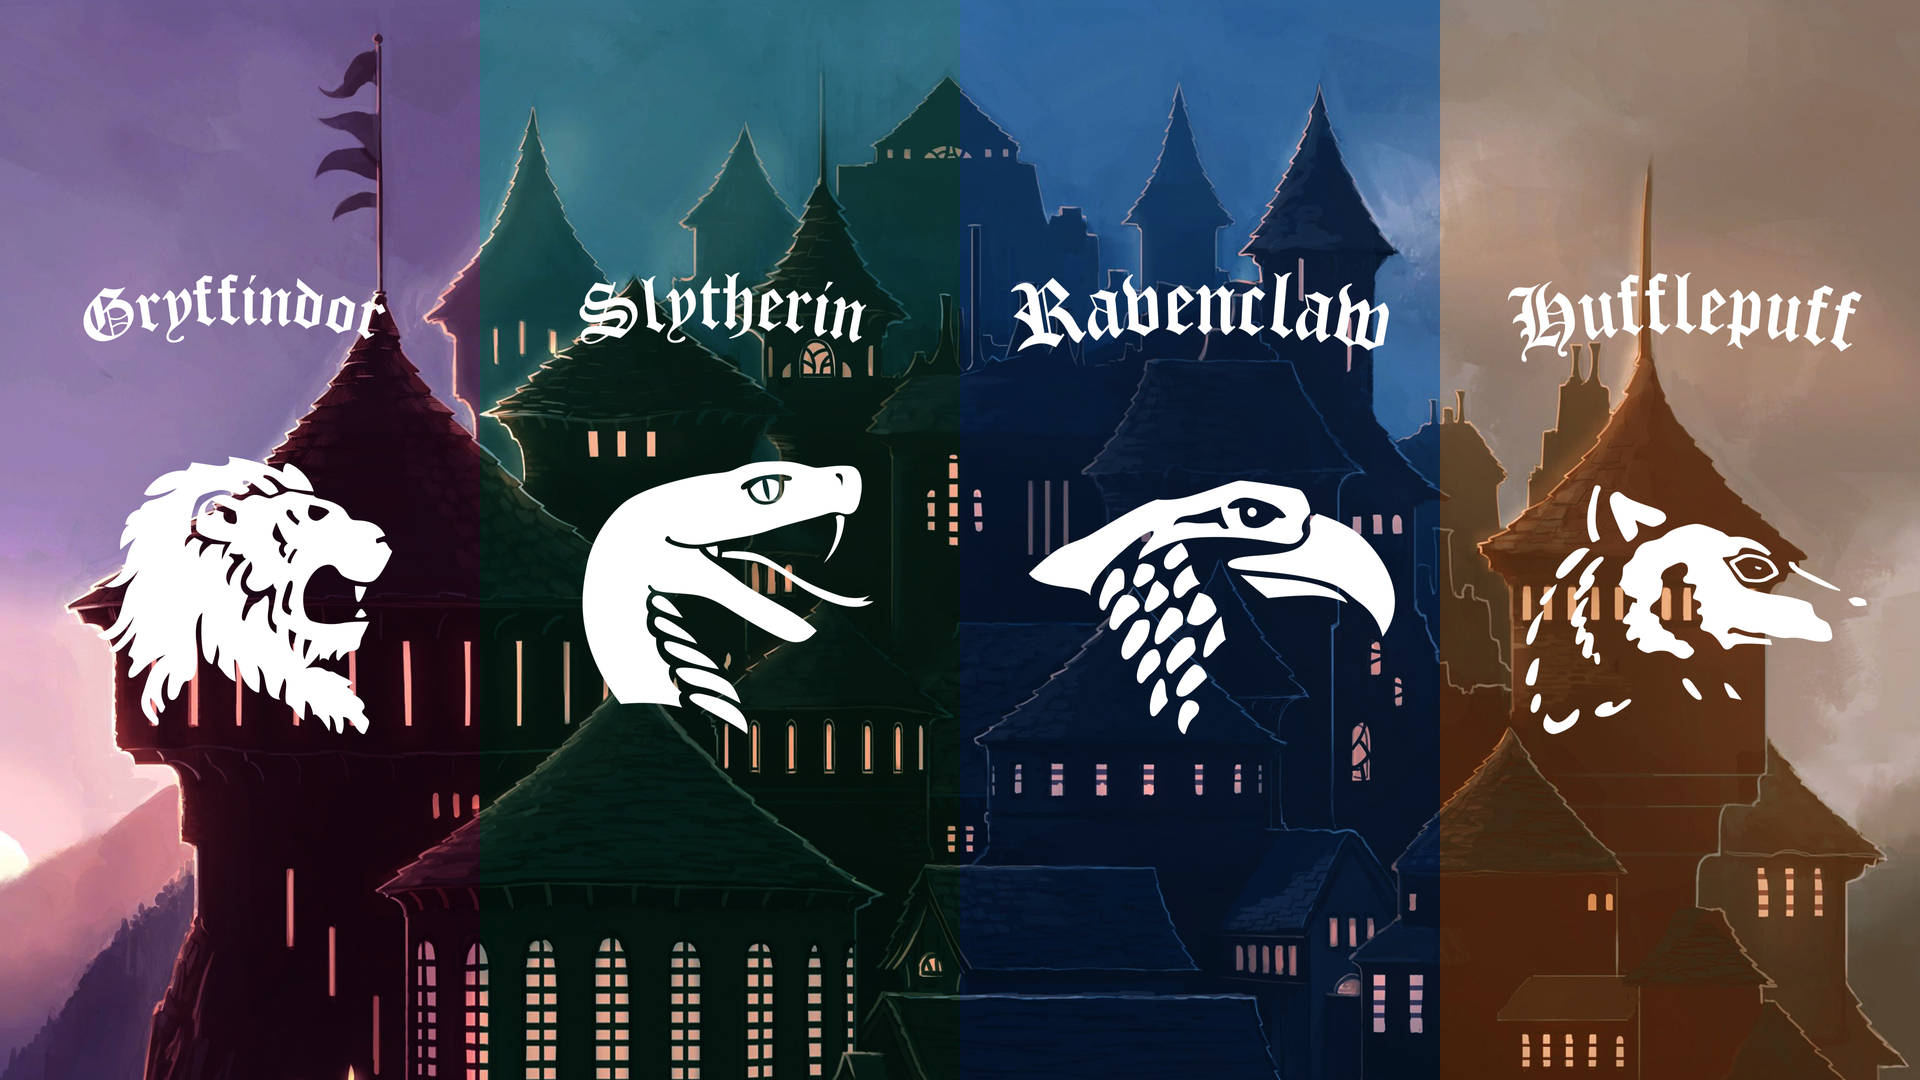 House Logos Hogwarts Aesthetic Wallpaper